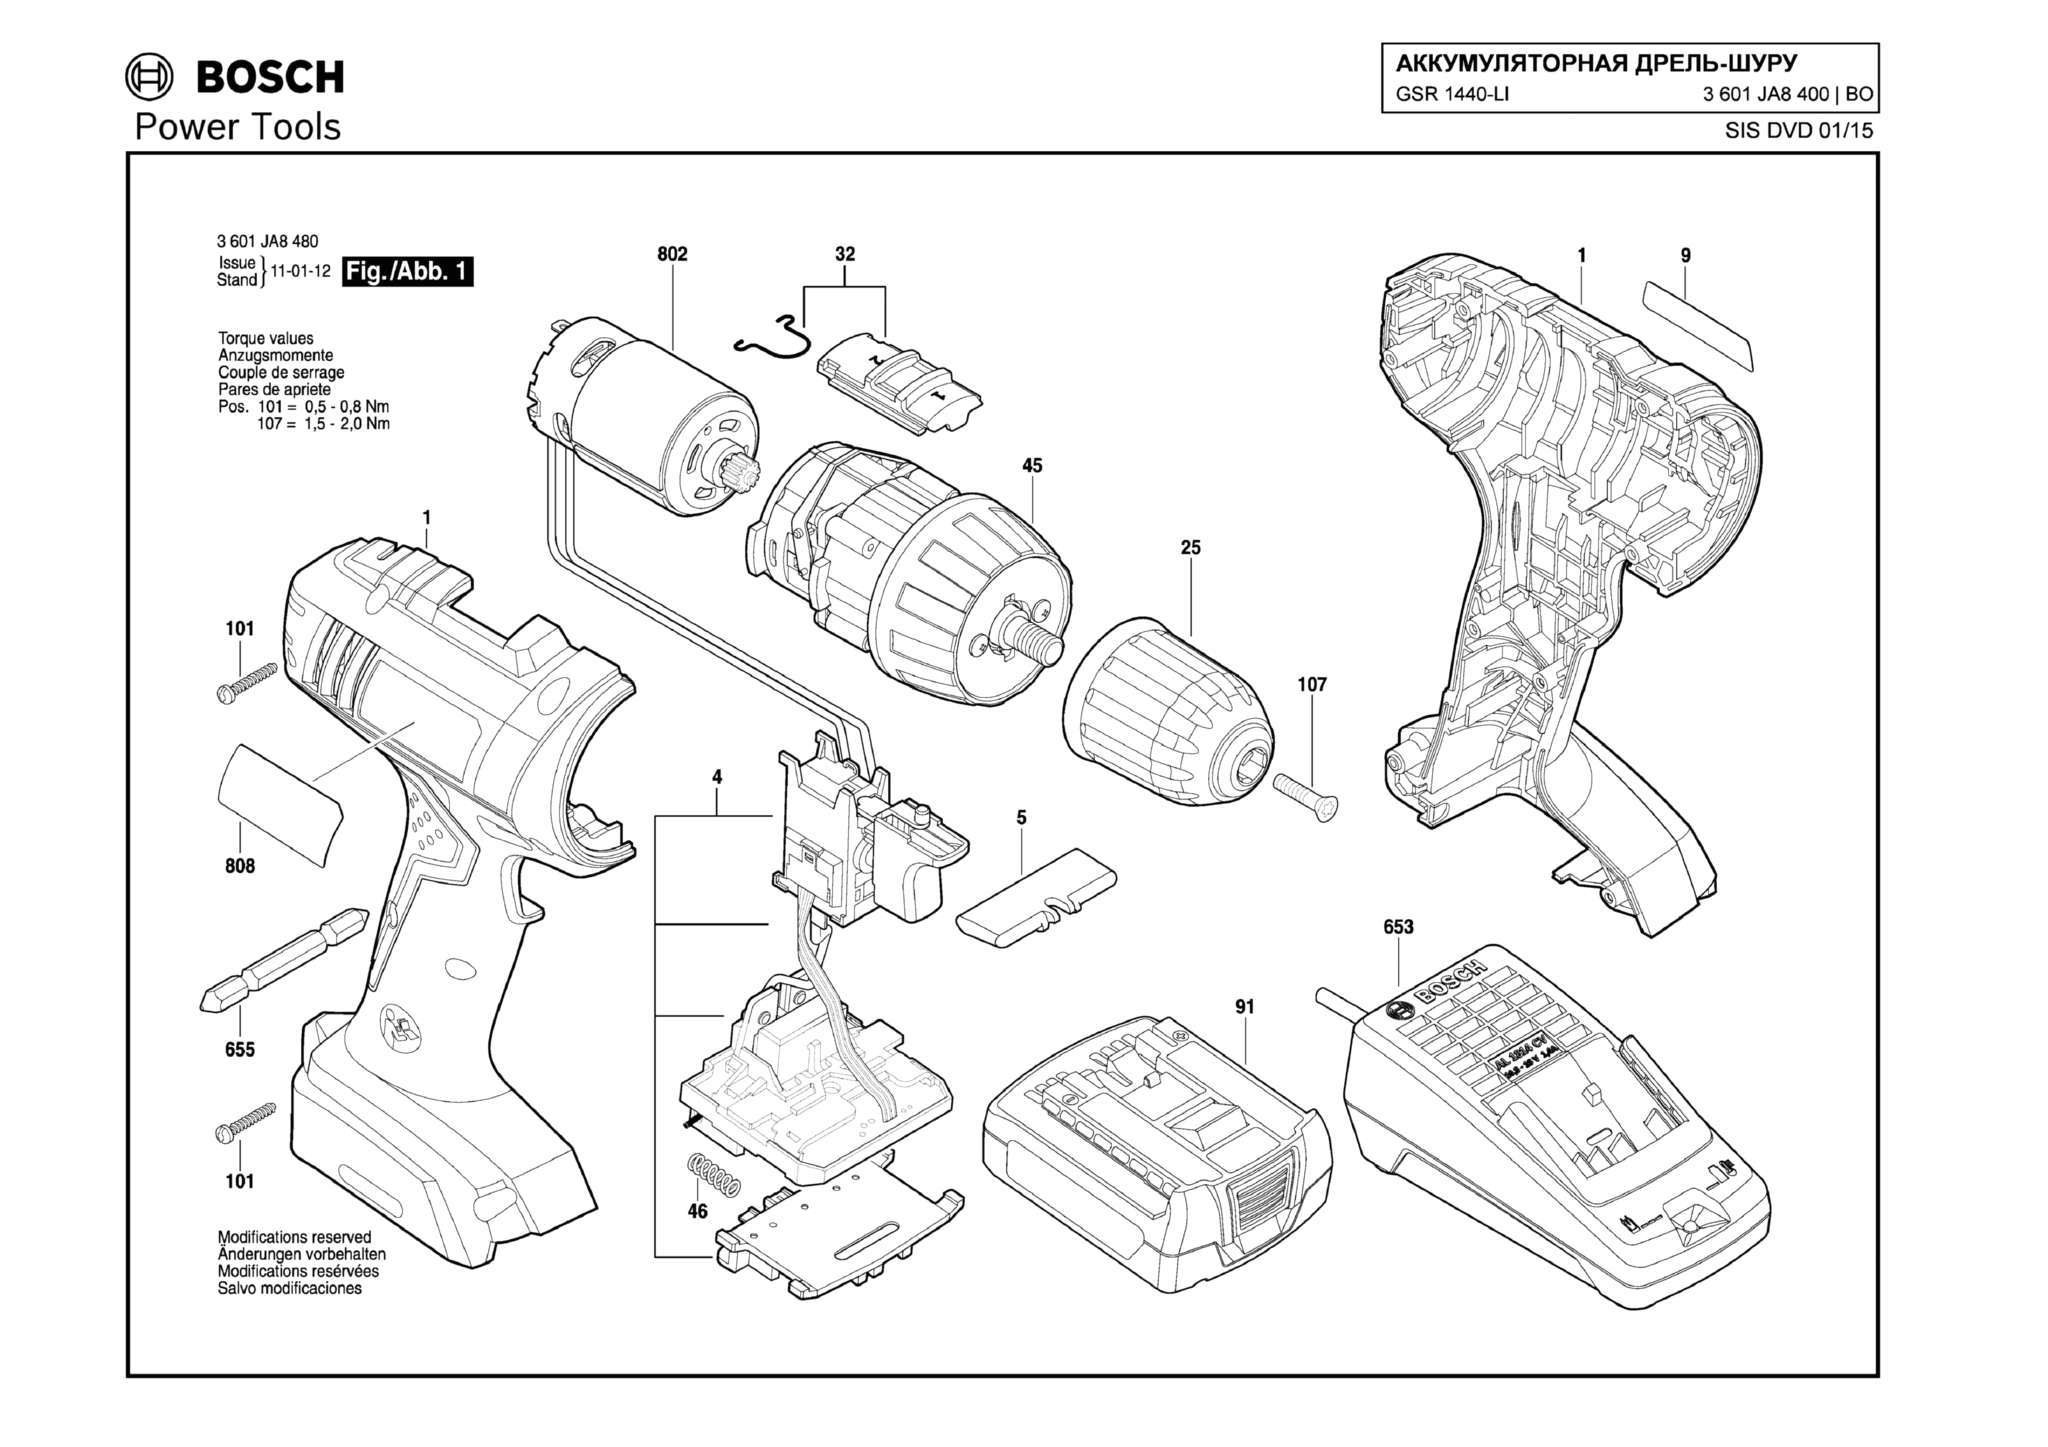 Запчасти, схема и деталировка Bosch GSR 1440-LI (ТИП 3601JA8400)